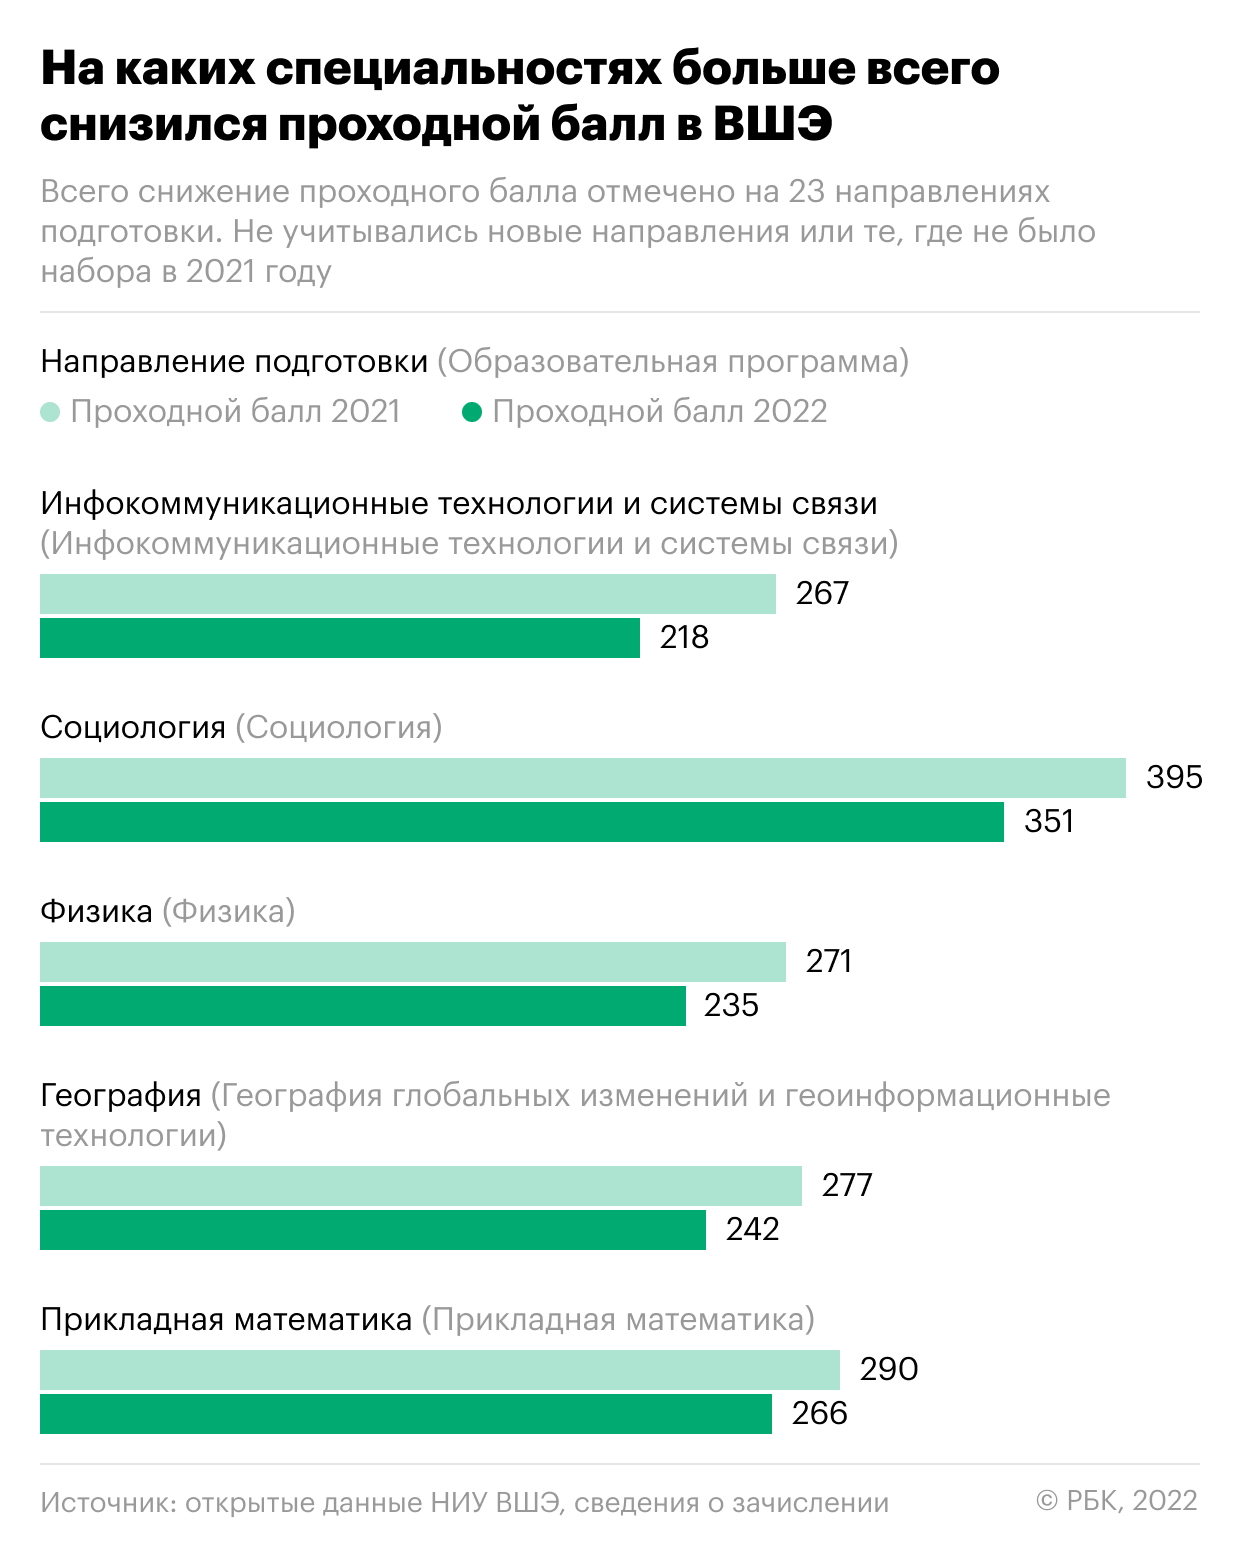 В ведущих вузах России снизился проходной балл для поступления на бюджет